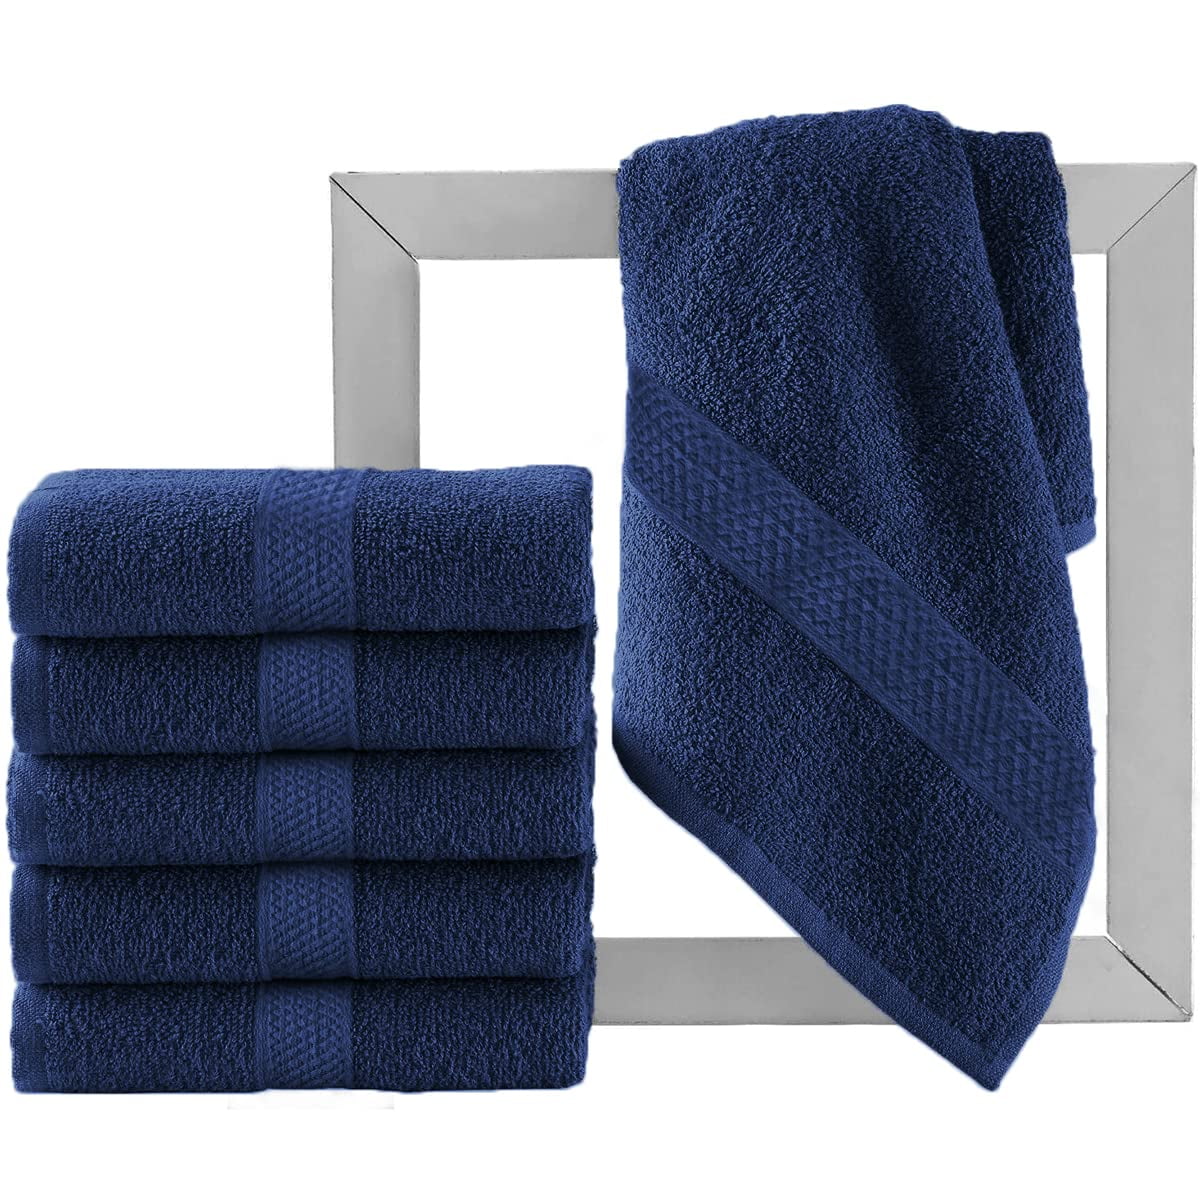 Salon Towel 4 Pack 16 x 27 Gym Towel Hand Cotton Soft Towels 